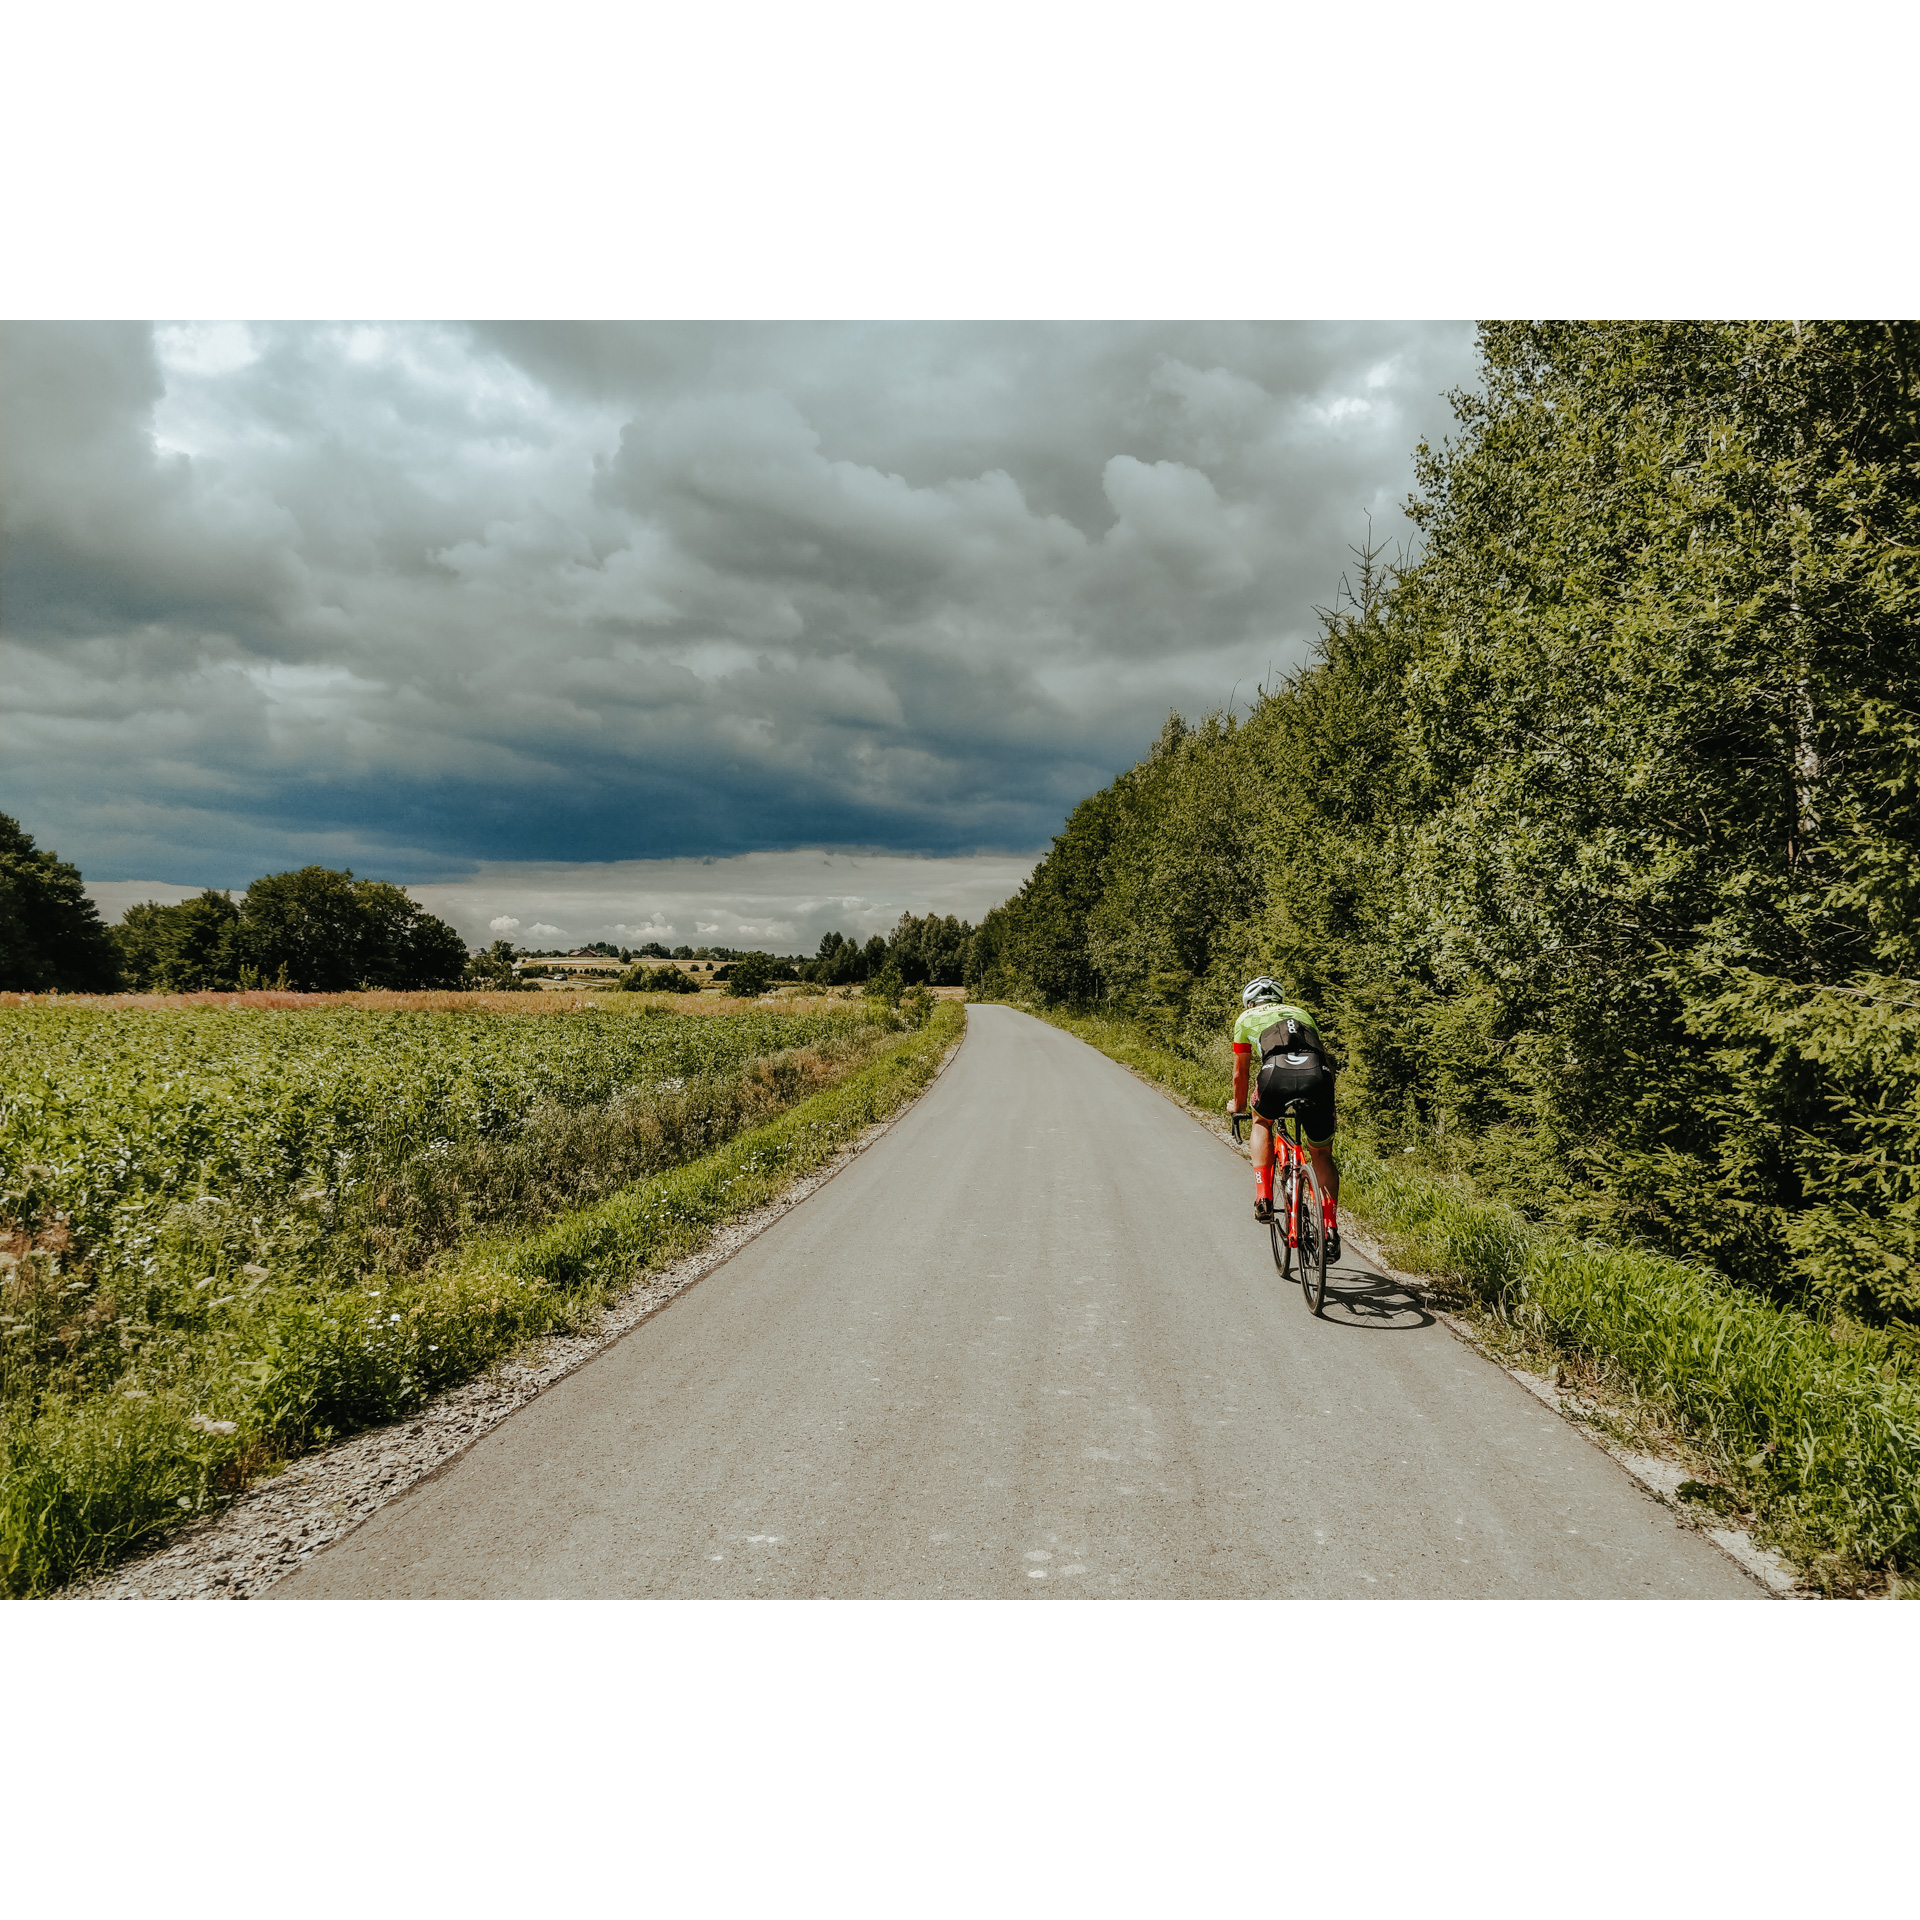 Rowerzysta w stroju kolarskim i kasku jadący drogą asfaltową wzdłuż ściany zielonych drzew po prawej stronie, po lewej stronie pola uprawne, w tle burzowe chmury na niebie